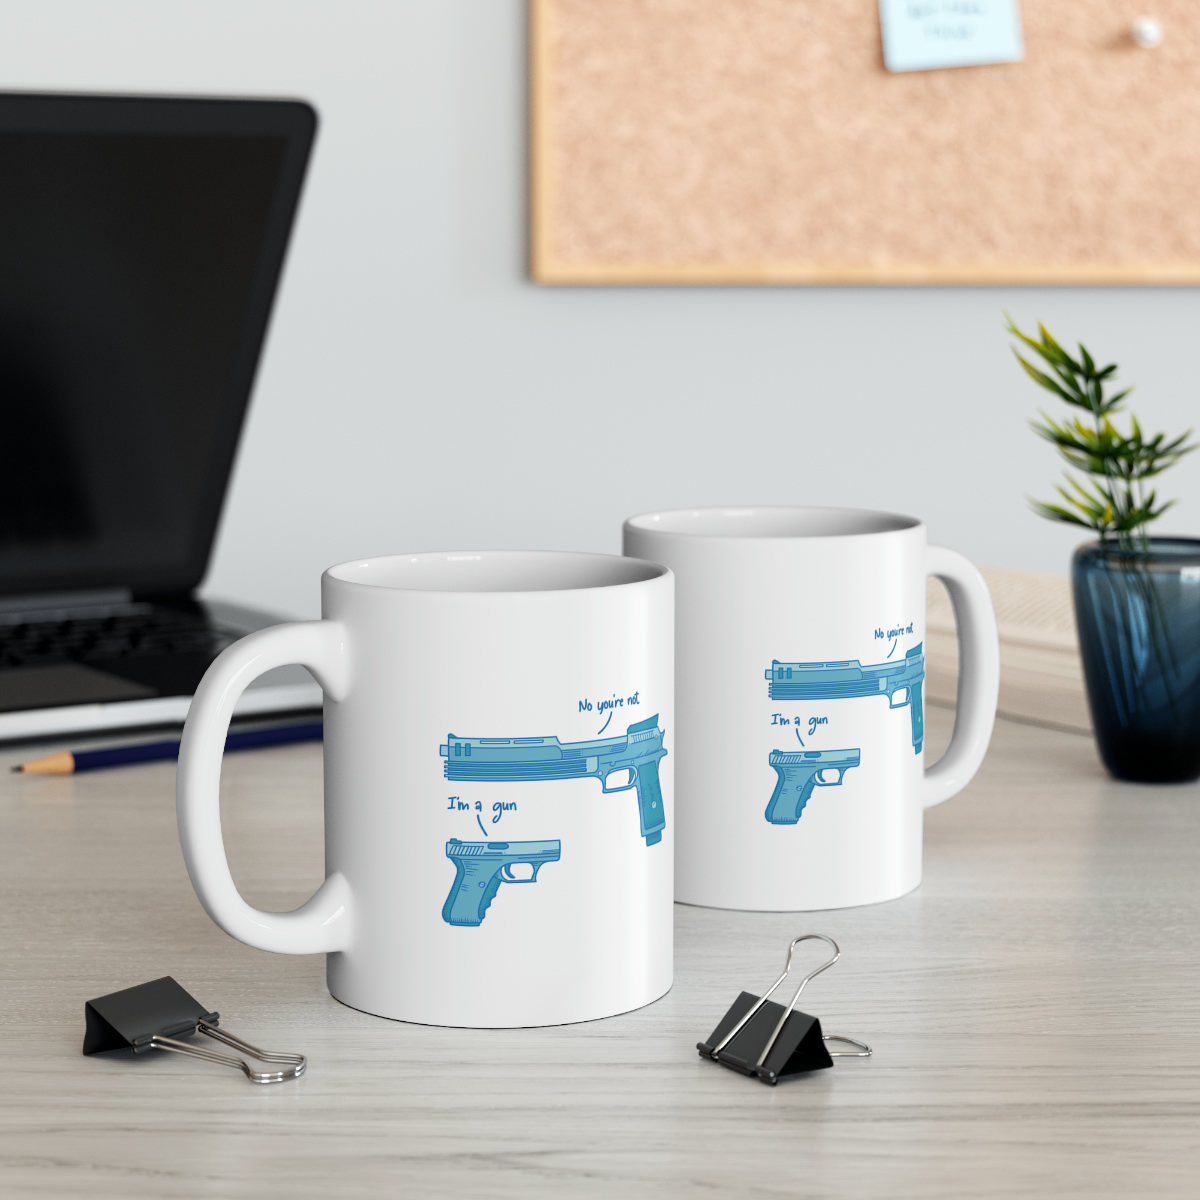 Weapon - Ceramic Mug, 11oz